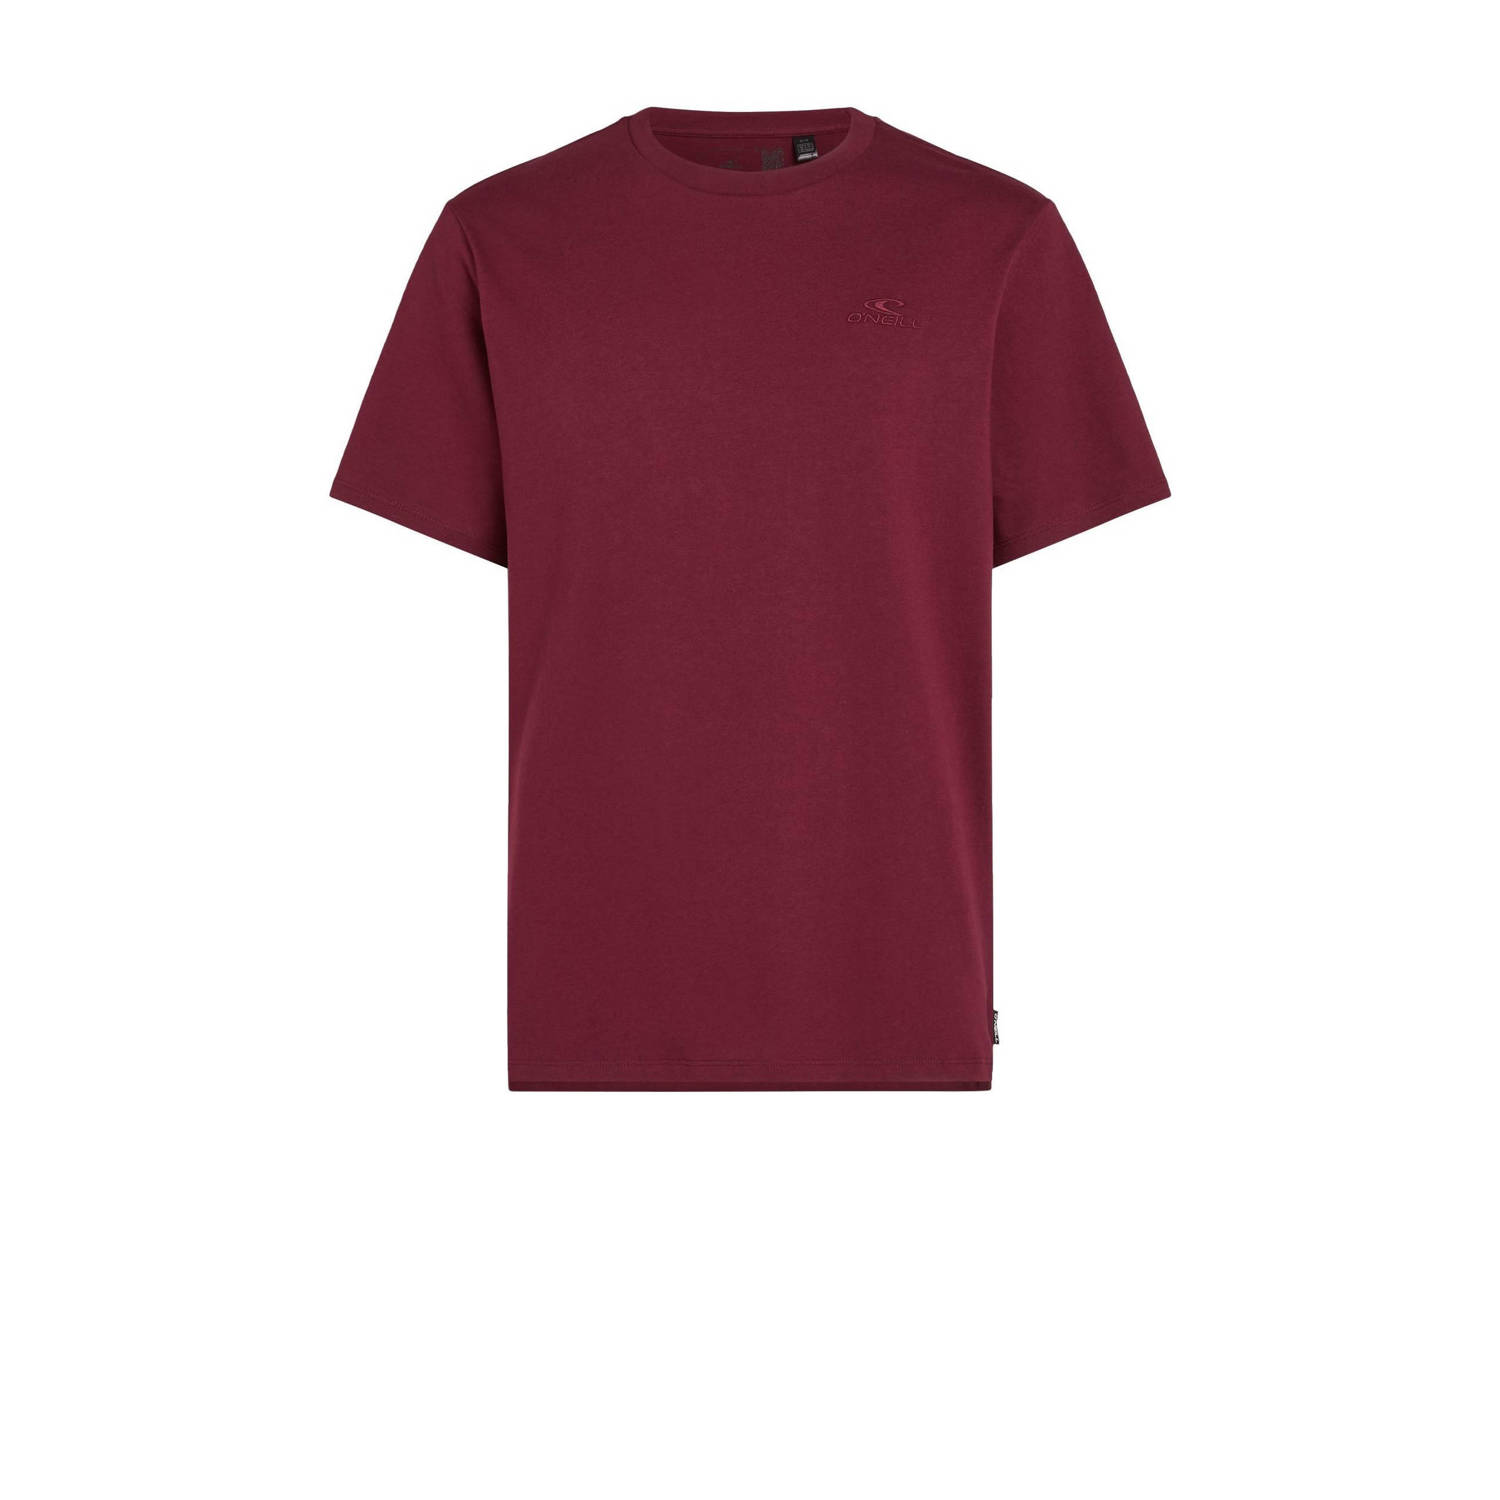 O'Neill regular fit T-shirt met logo bordeaux